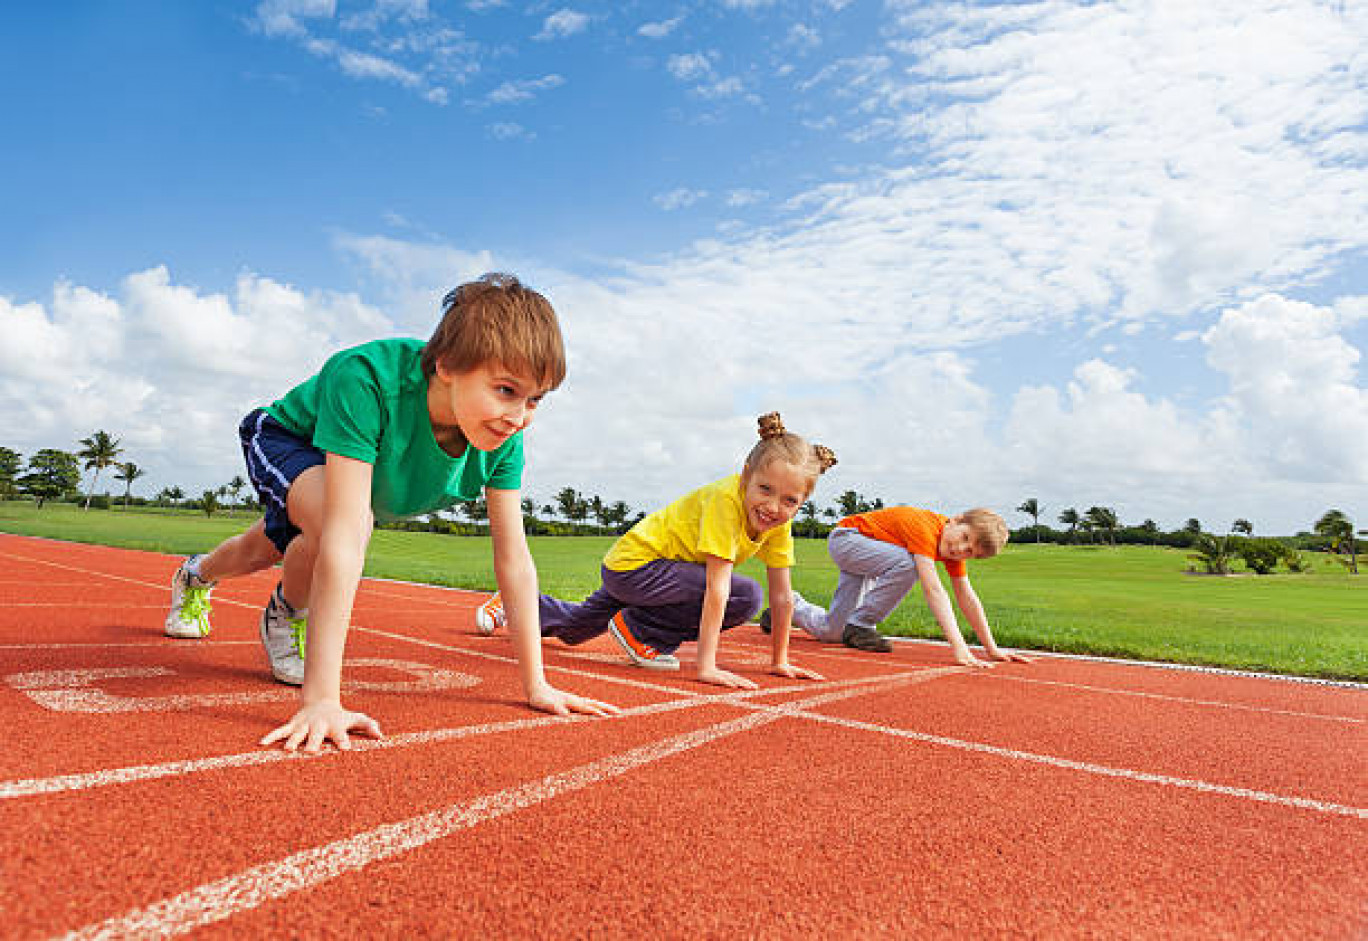 Inciter les enfants à pratiquer une activité physique 30 minutes par jour. Au minimum. 